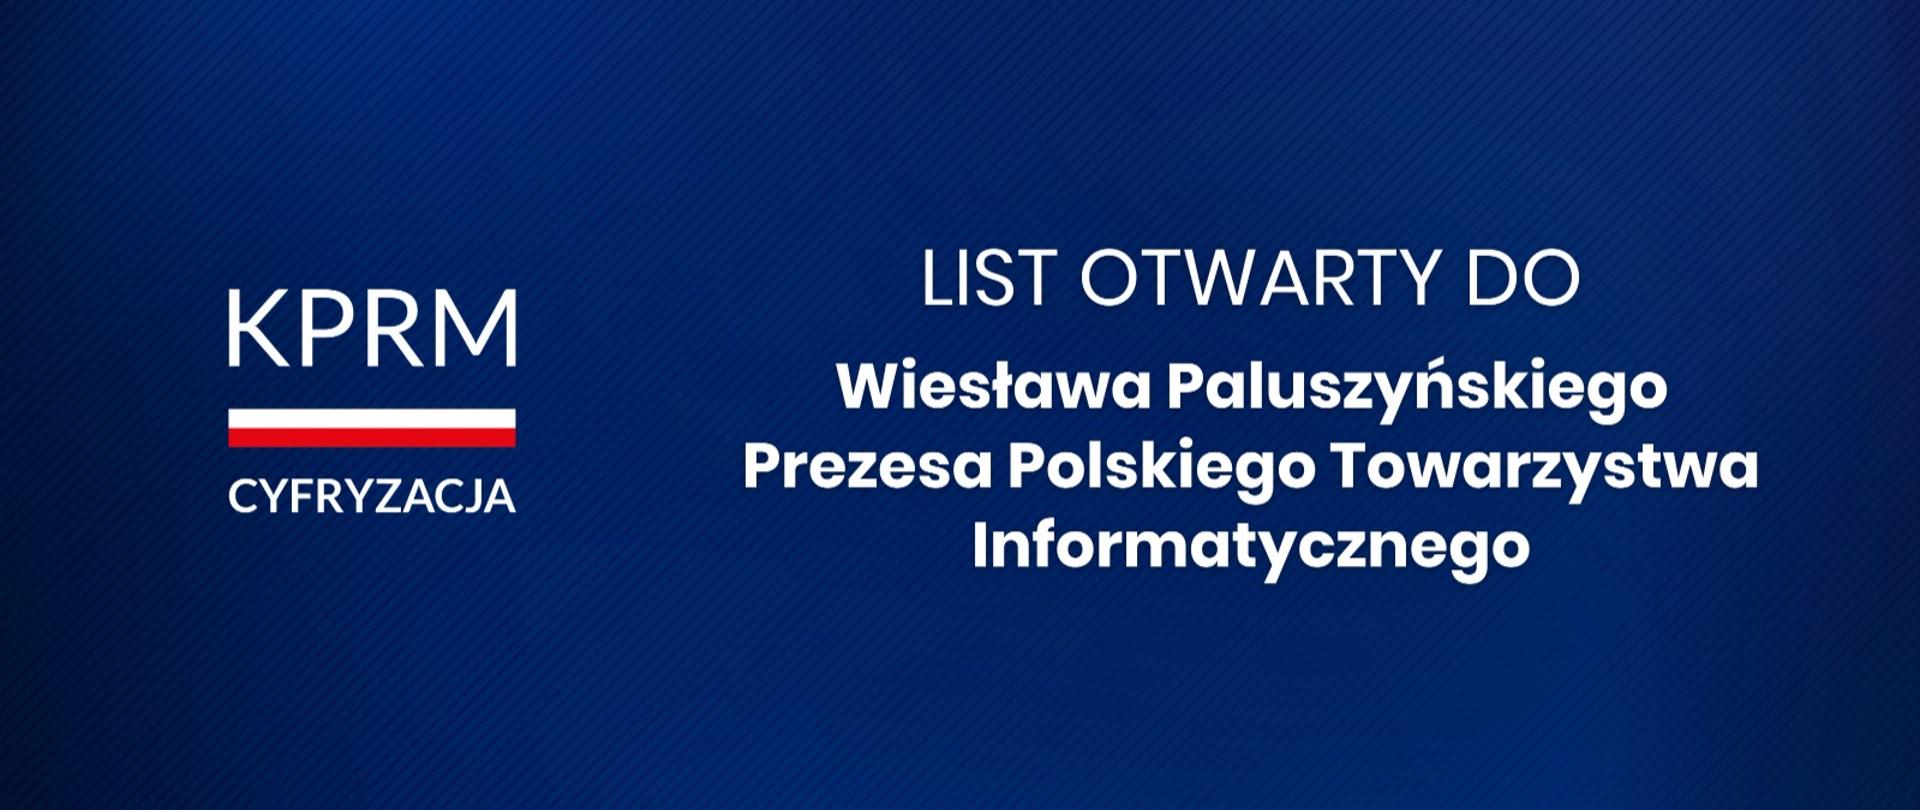 List otwarty do Pana Wiesława Paluszyńskiego - Prezesa Polskiego Towarzystwa Informatycznego